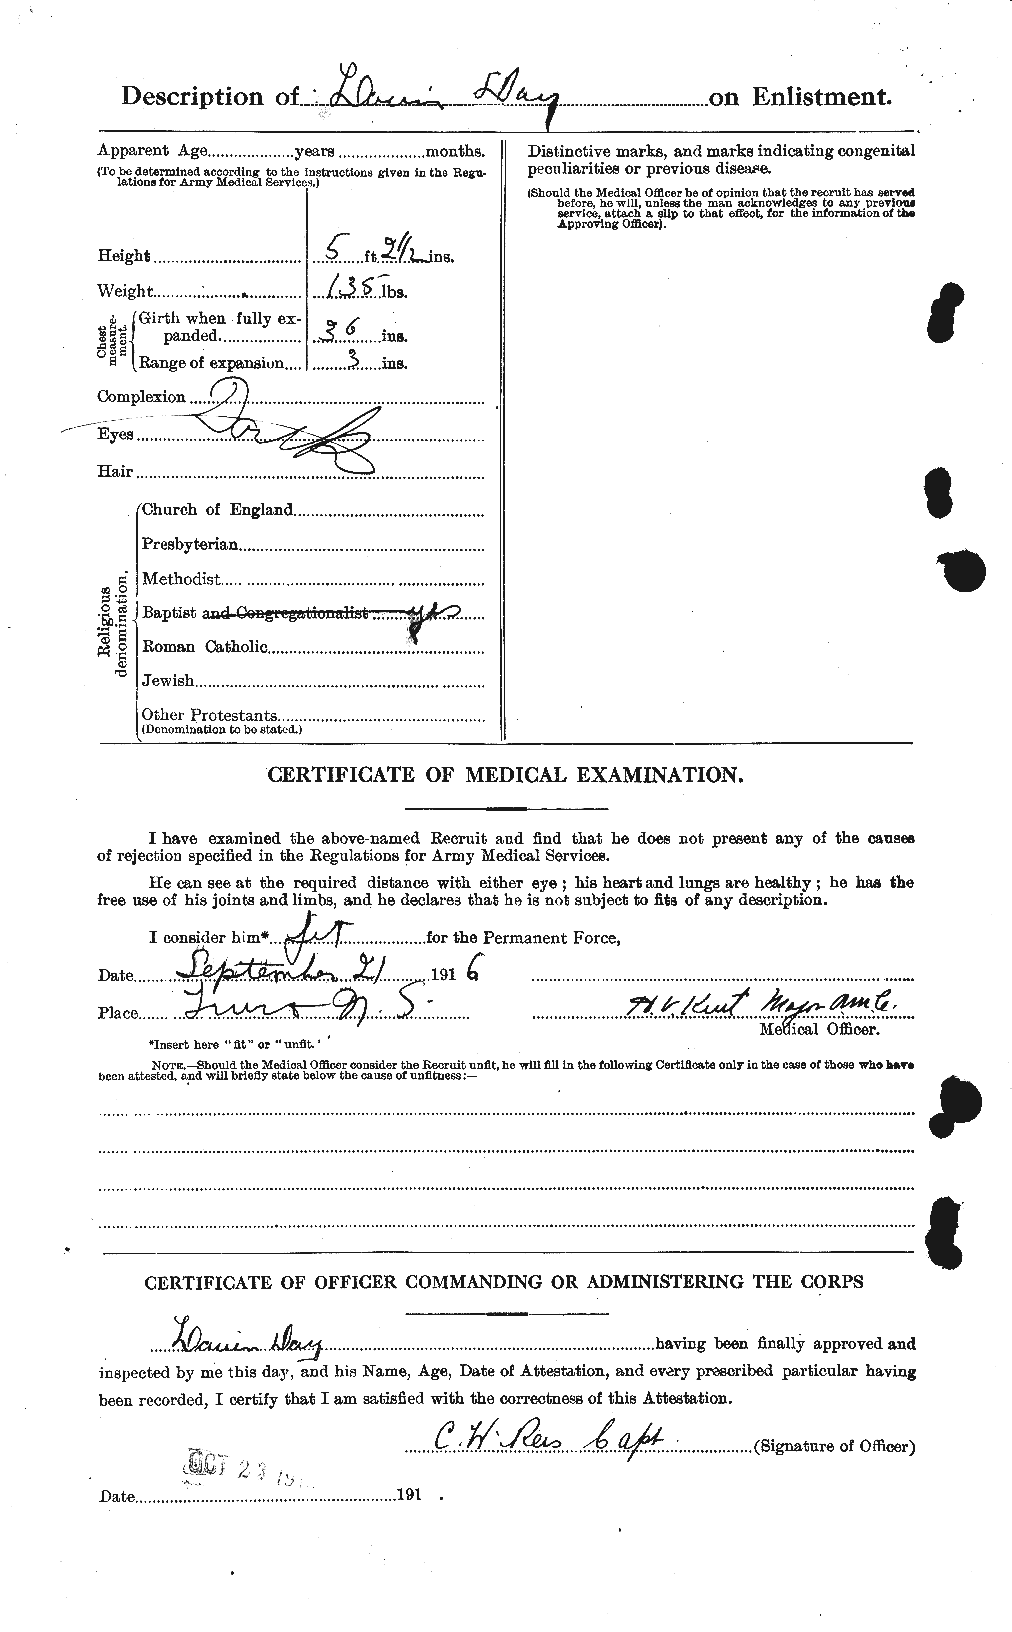 Dossiers du Personnel de la Première Guerre mondiale - CEC 283431b